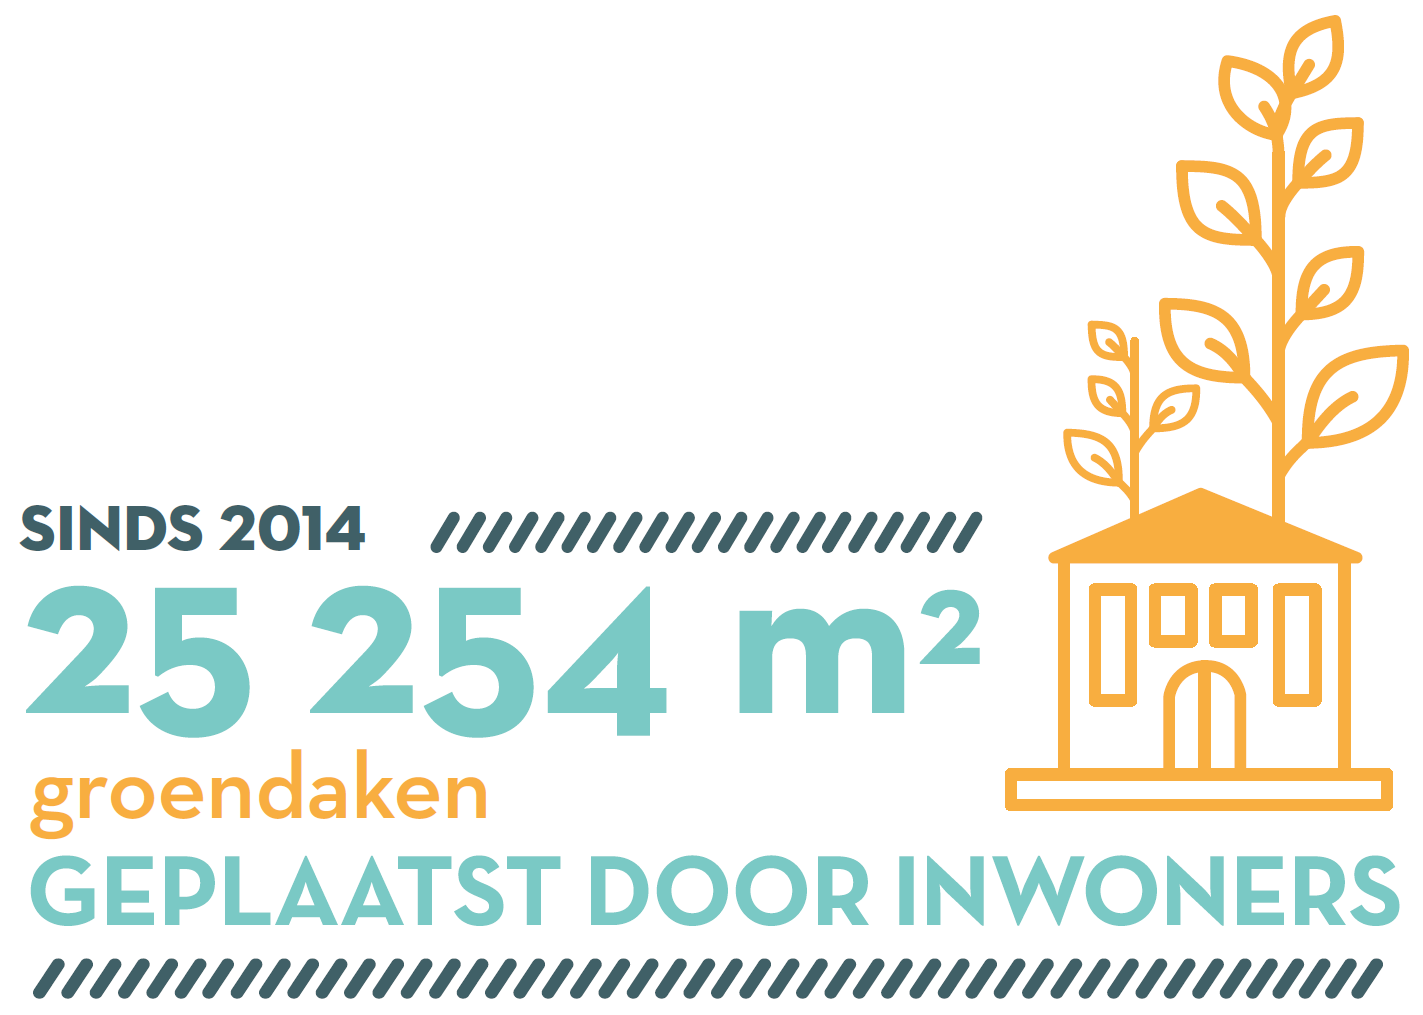 Sinds 2014, 25.254 m2 groendaken geplaatst door inwoners